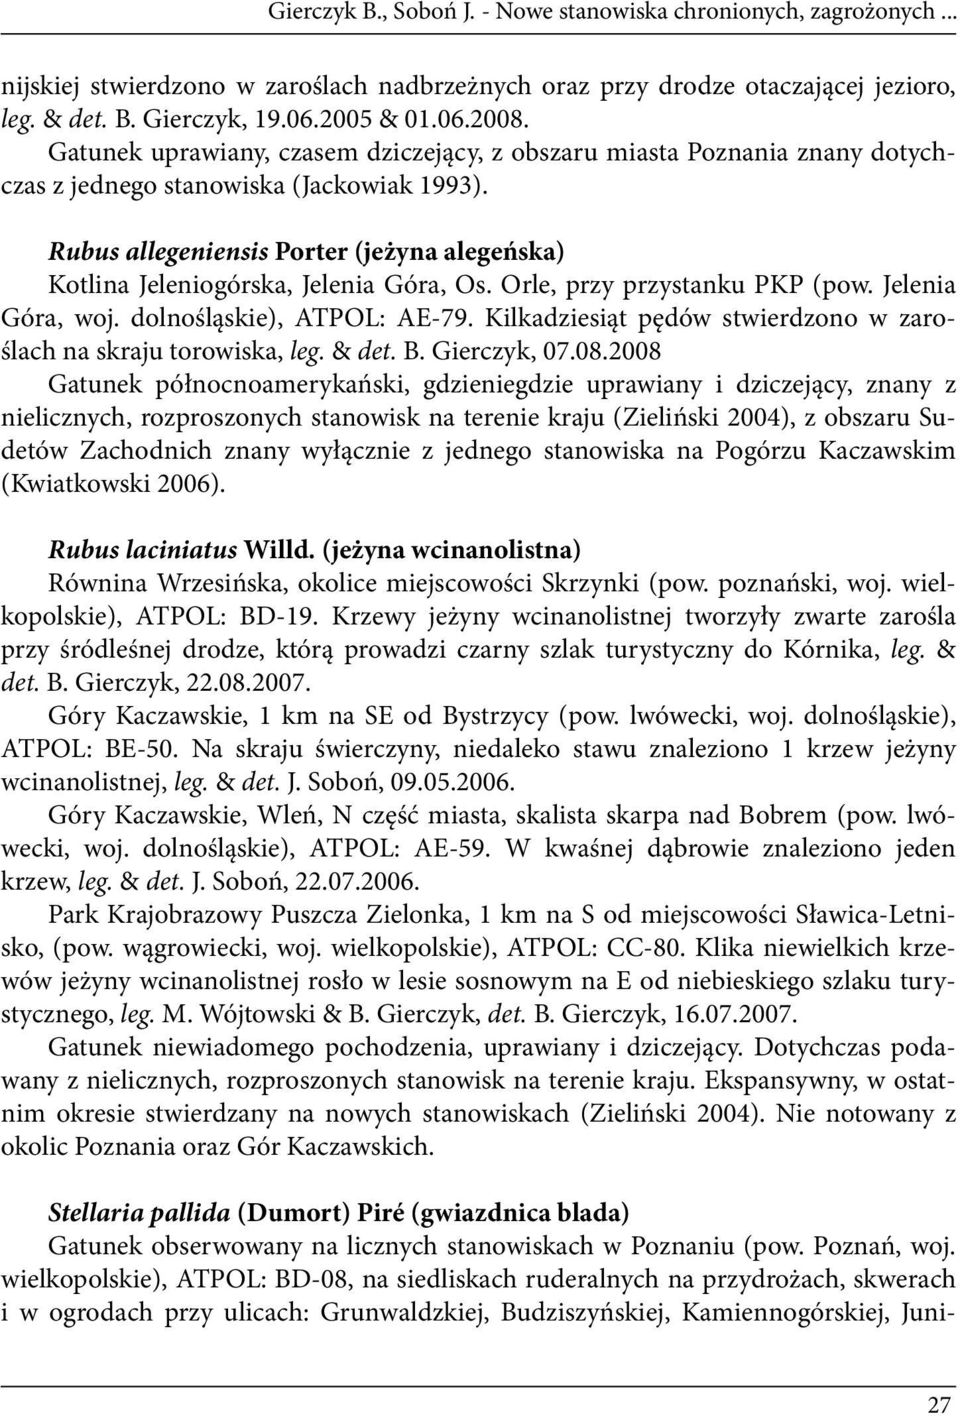 Rubus allegeniensis Porter (jeżyna alegeńska) Kotlina Jeleniogórska, Jelenia Góra, Os. Orle, przy przystanku PKP (pow. Jelenia Góra, woj. dolnośląskie), ATPOL: AE-79.